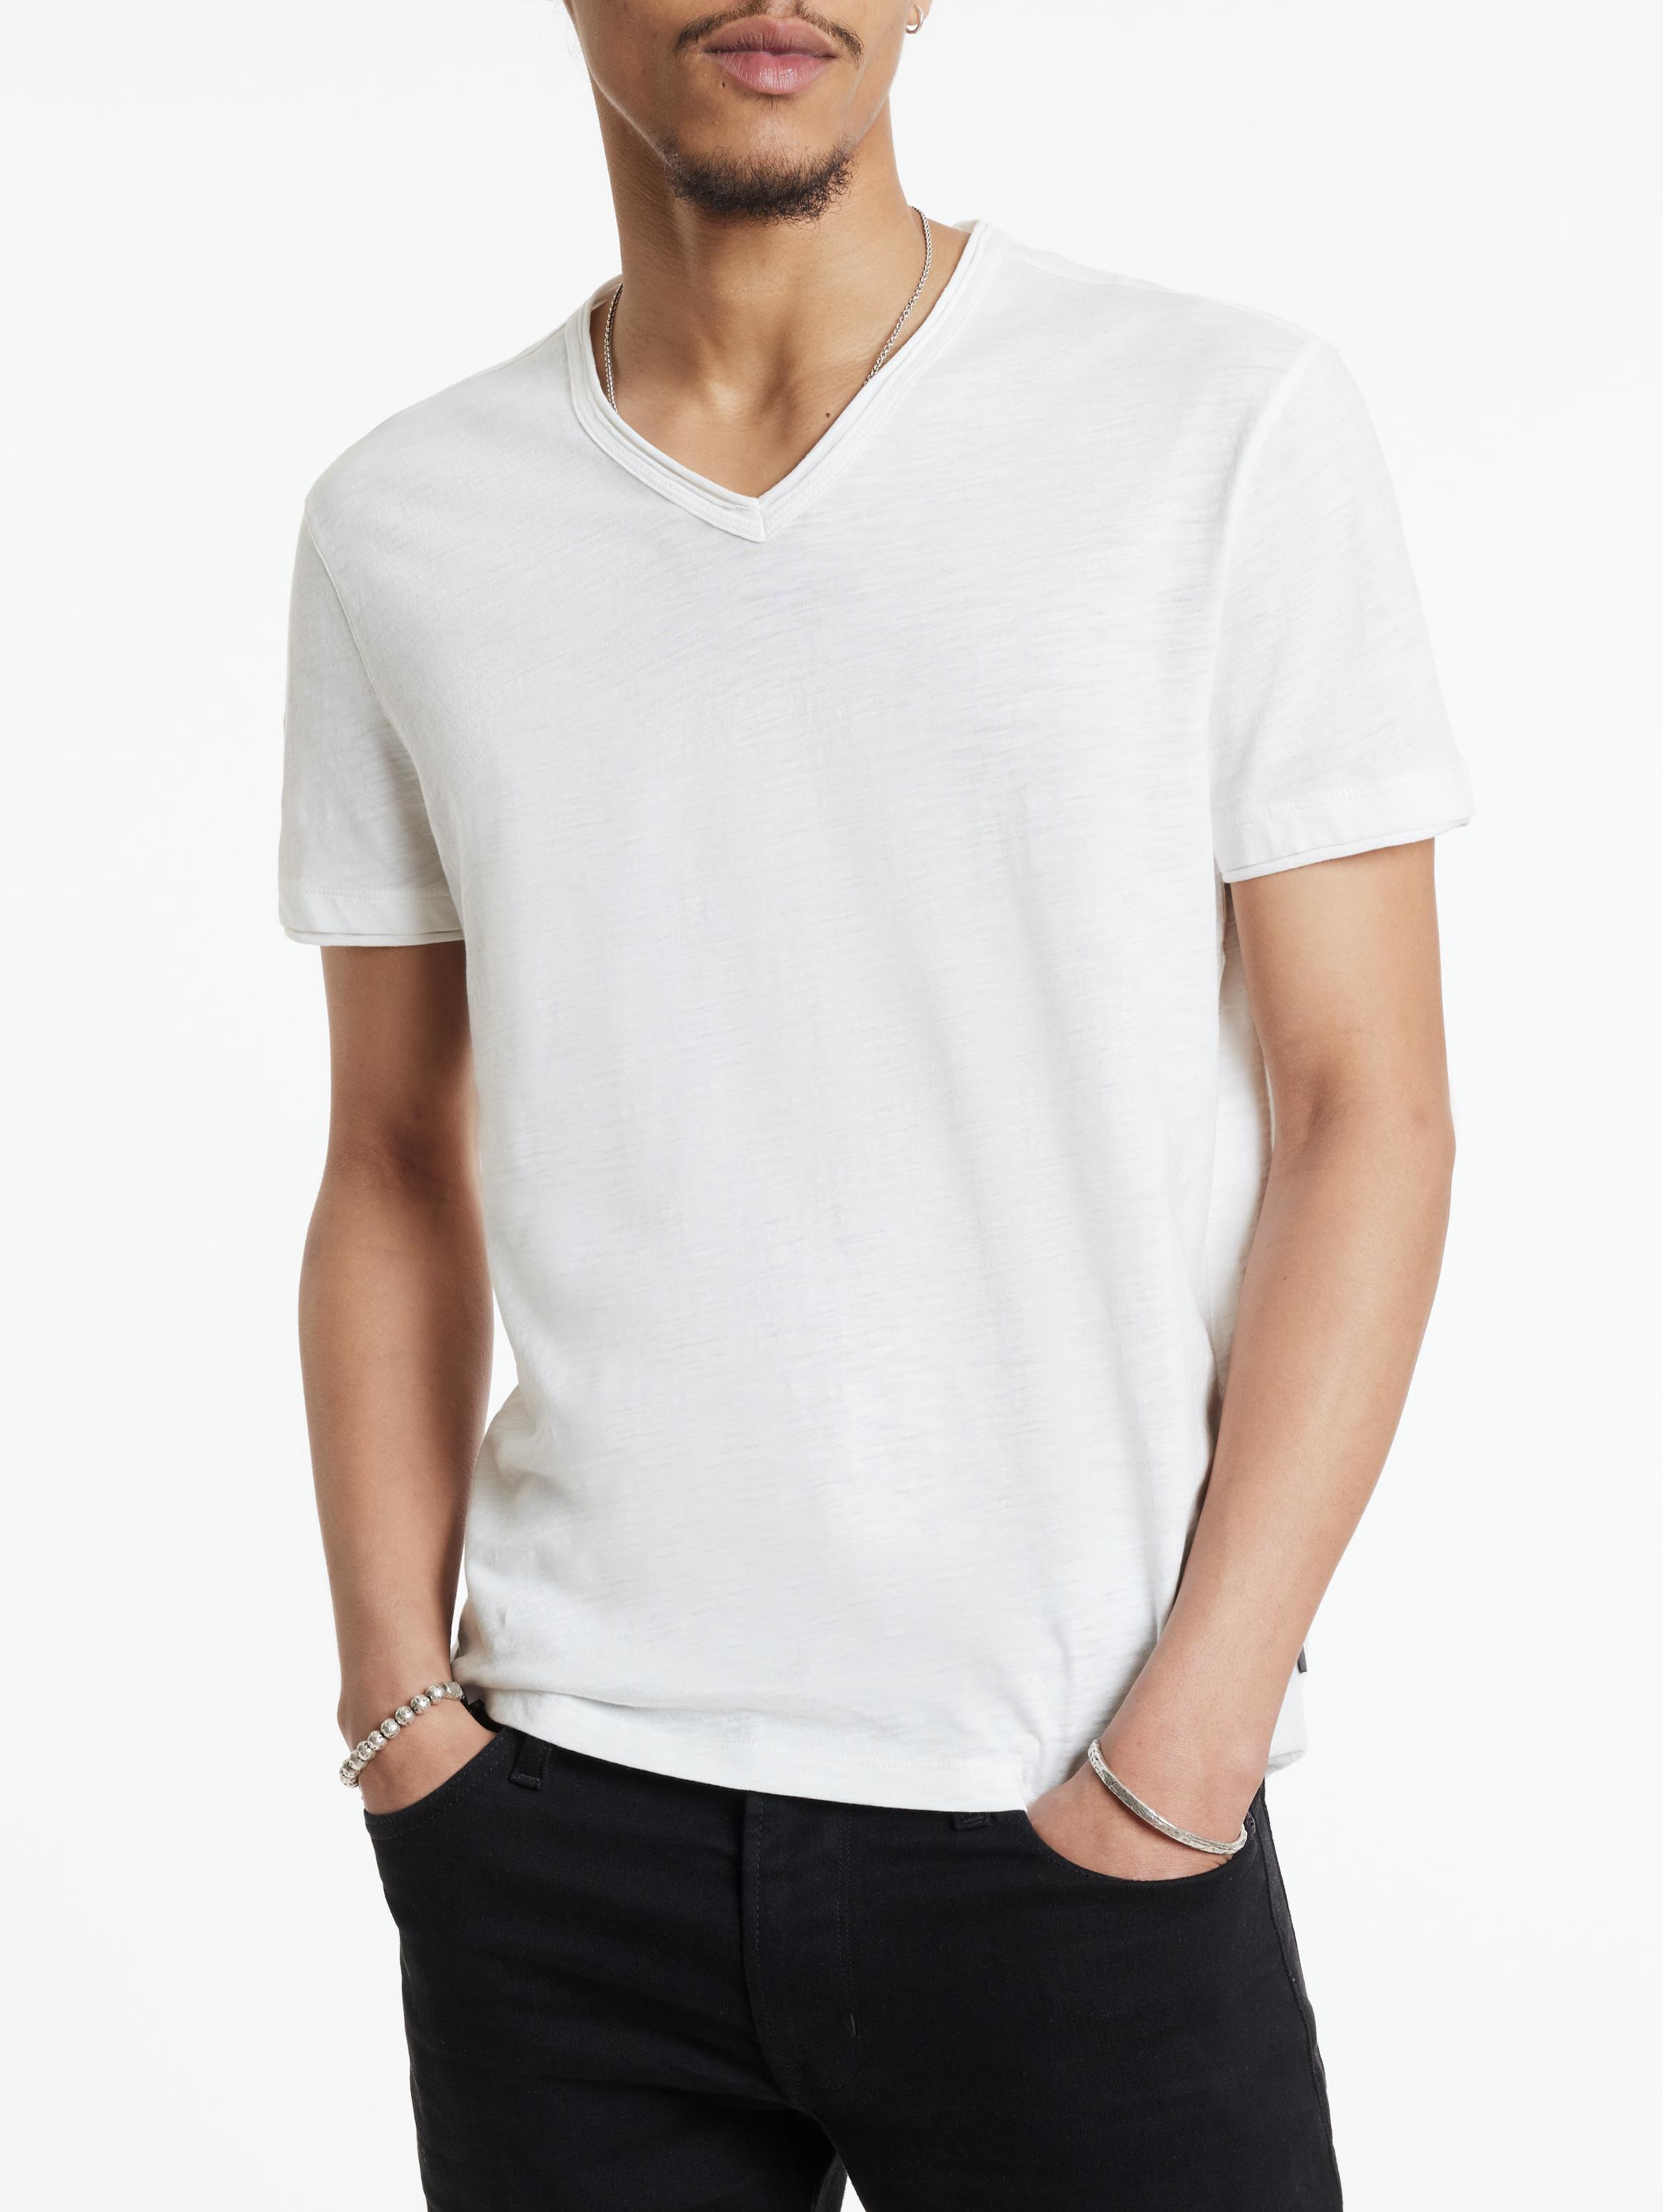 Glito Men's White Colour V-Neck T-Shirt for Men